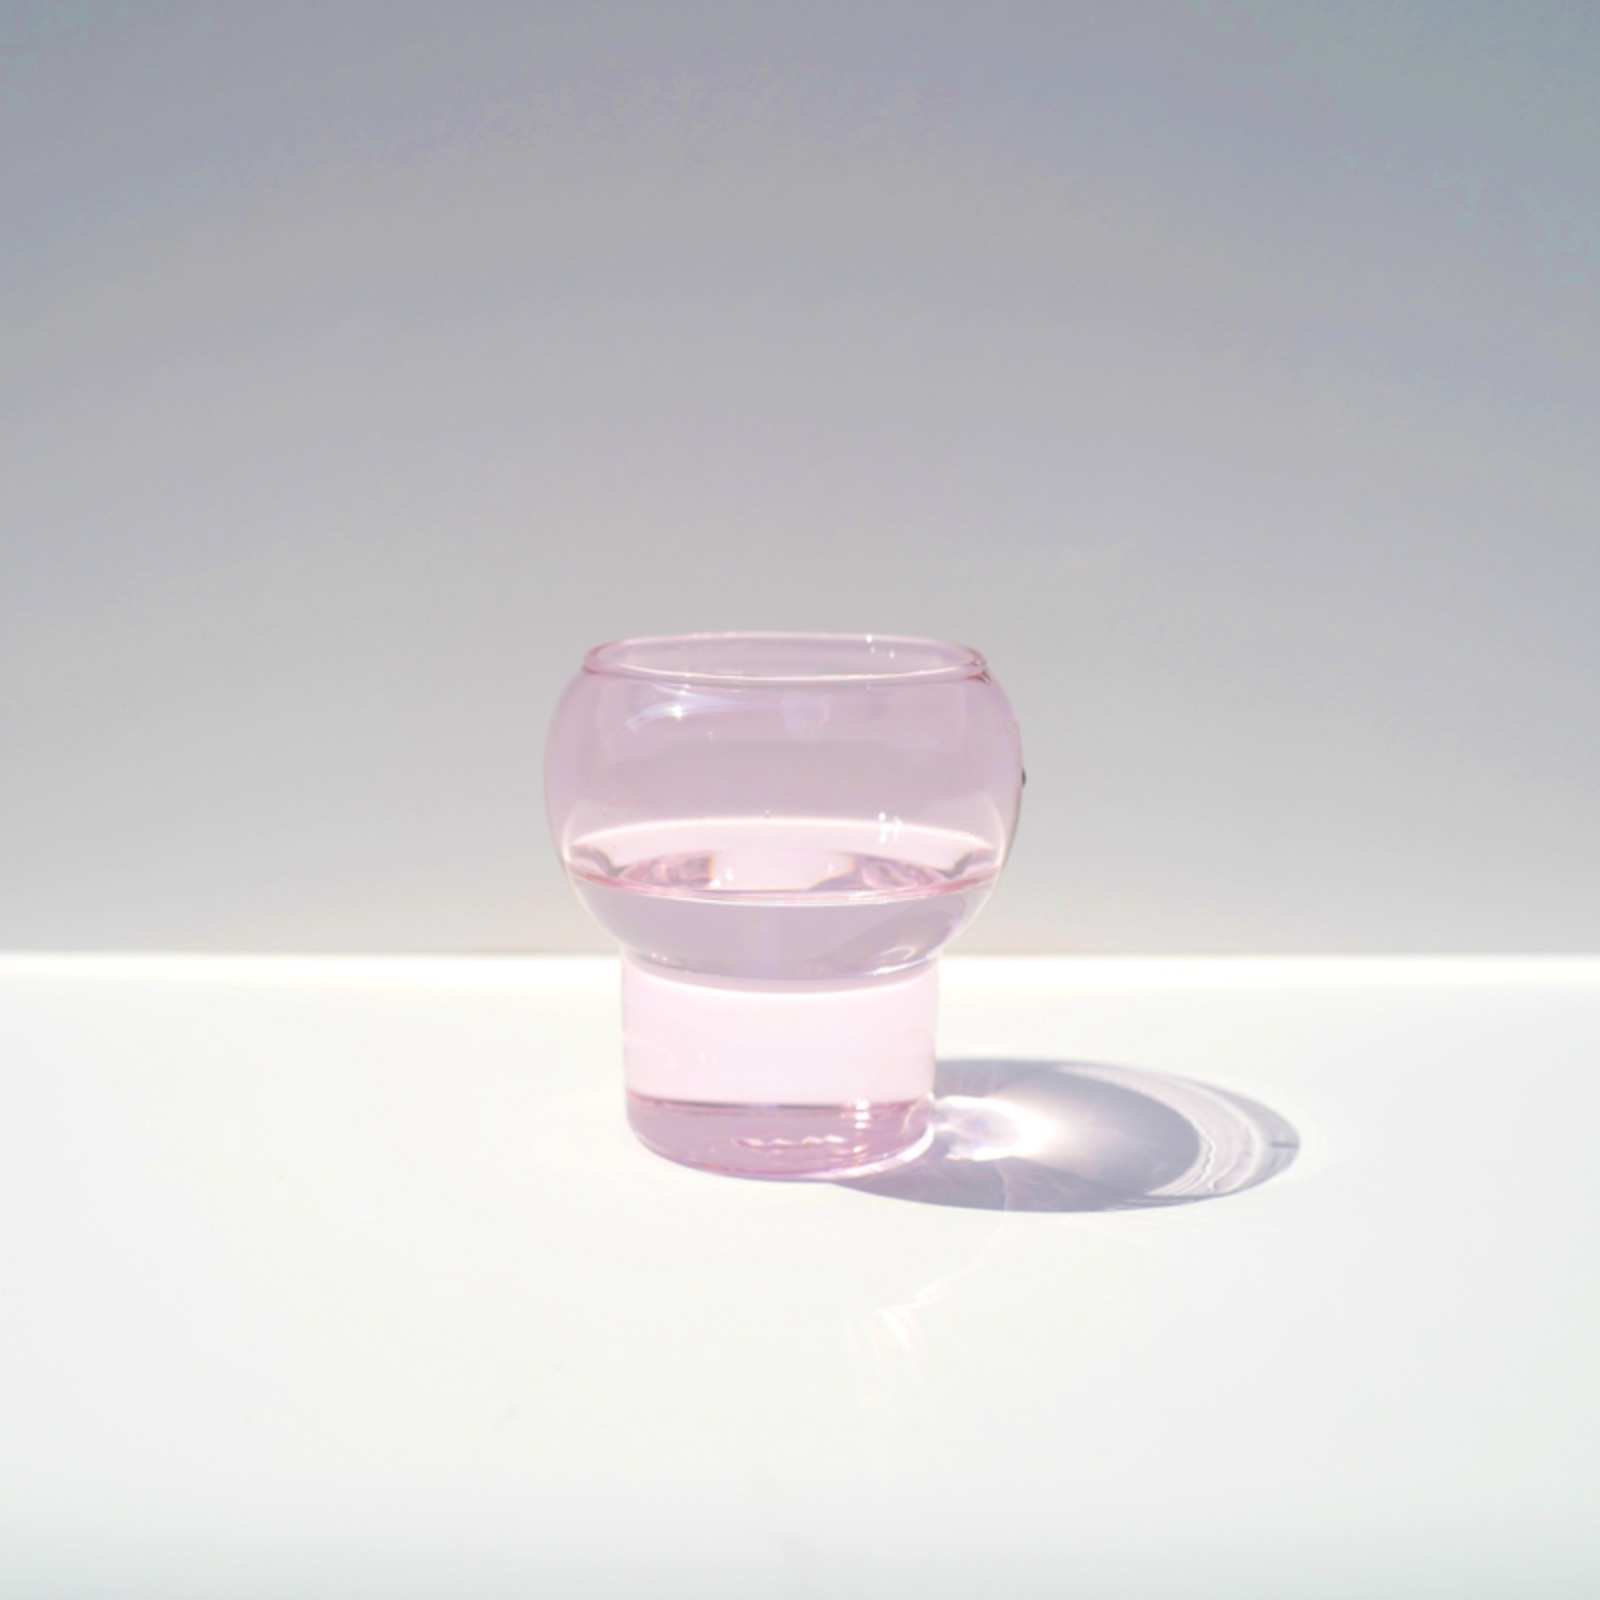 챕터원,[THE GIFT IDEA, 10%] 버블컵 핑크 1단